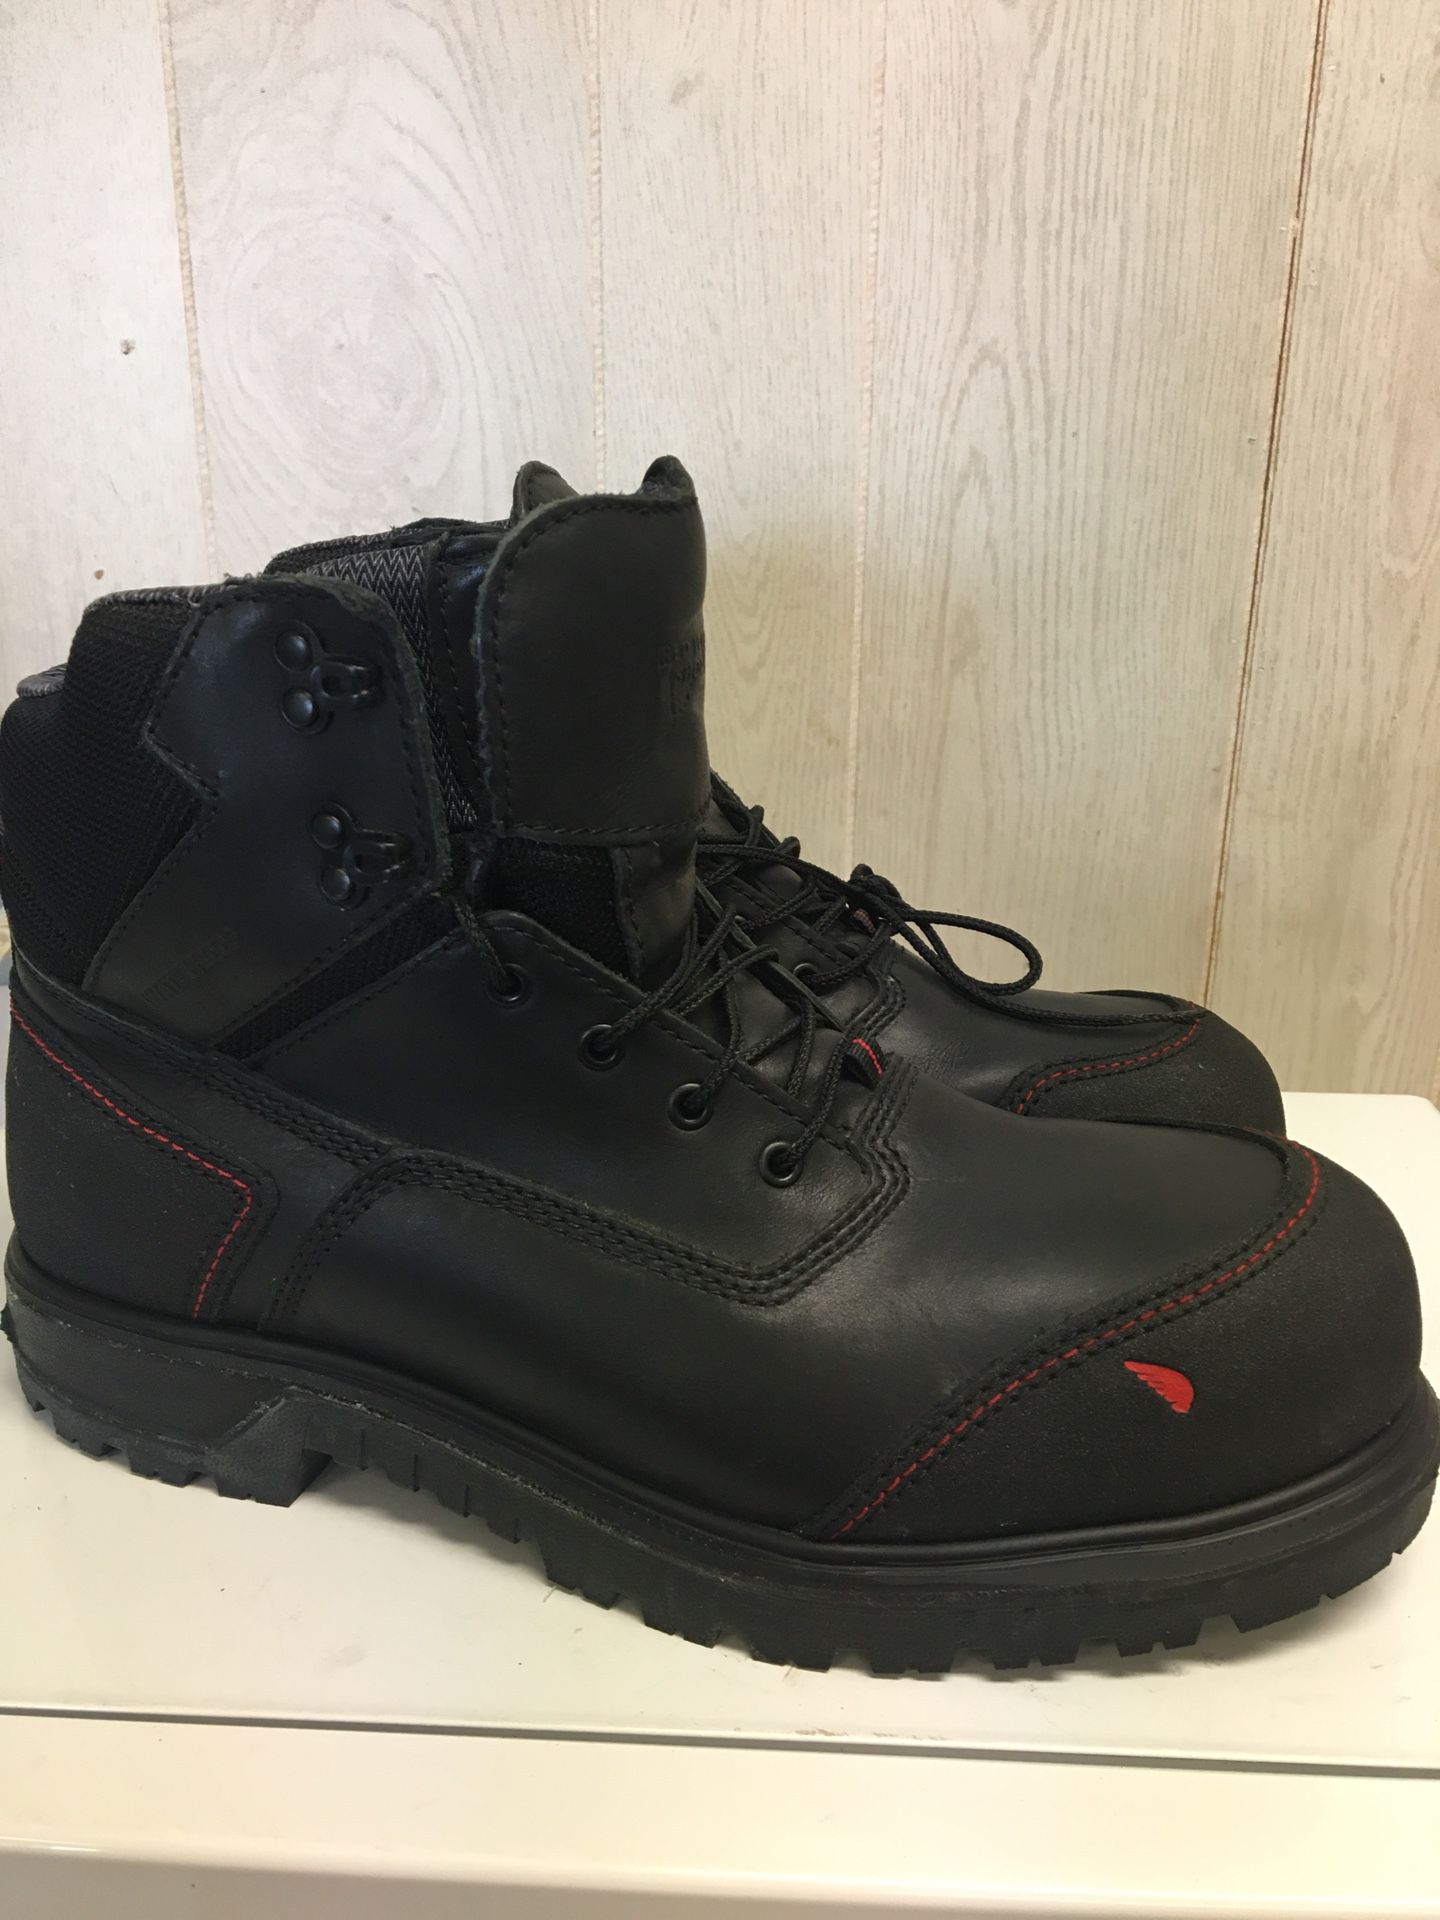 Redwing Steel Toe Boots Sz 9.5